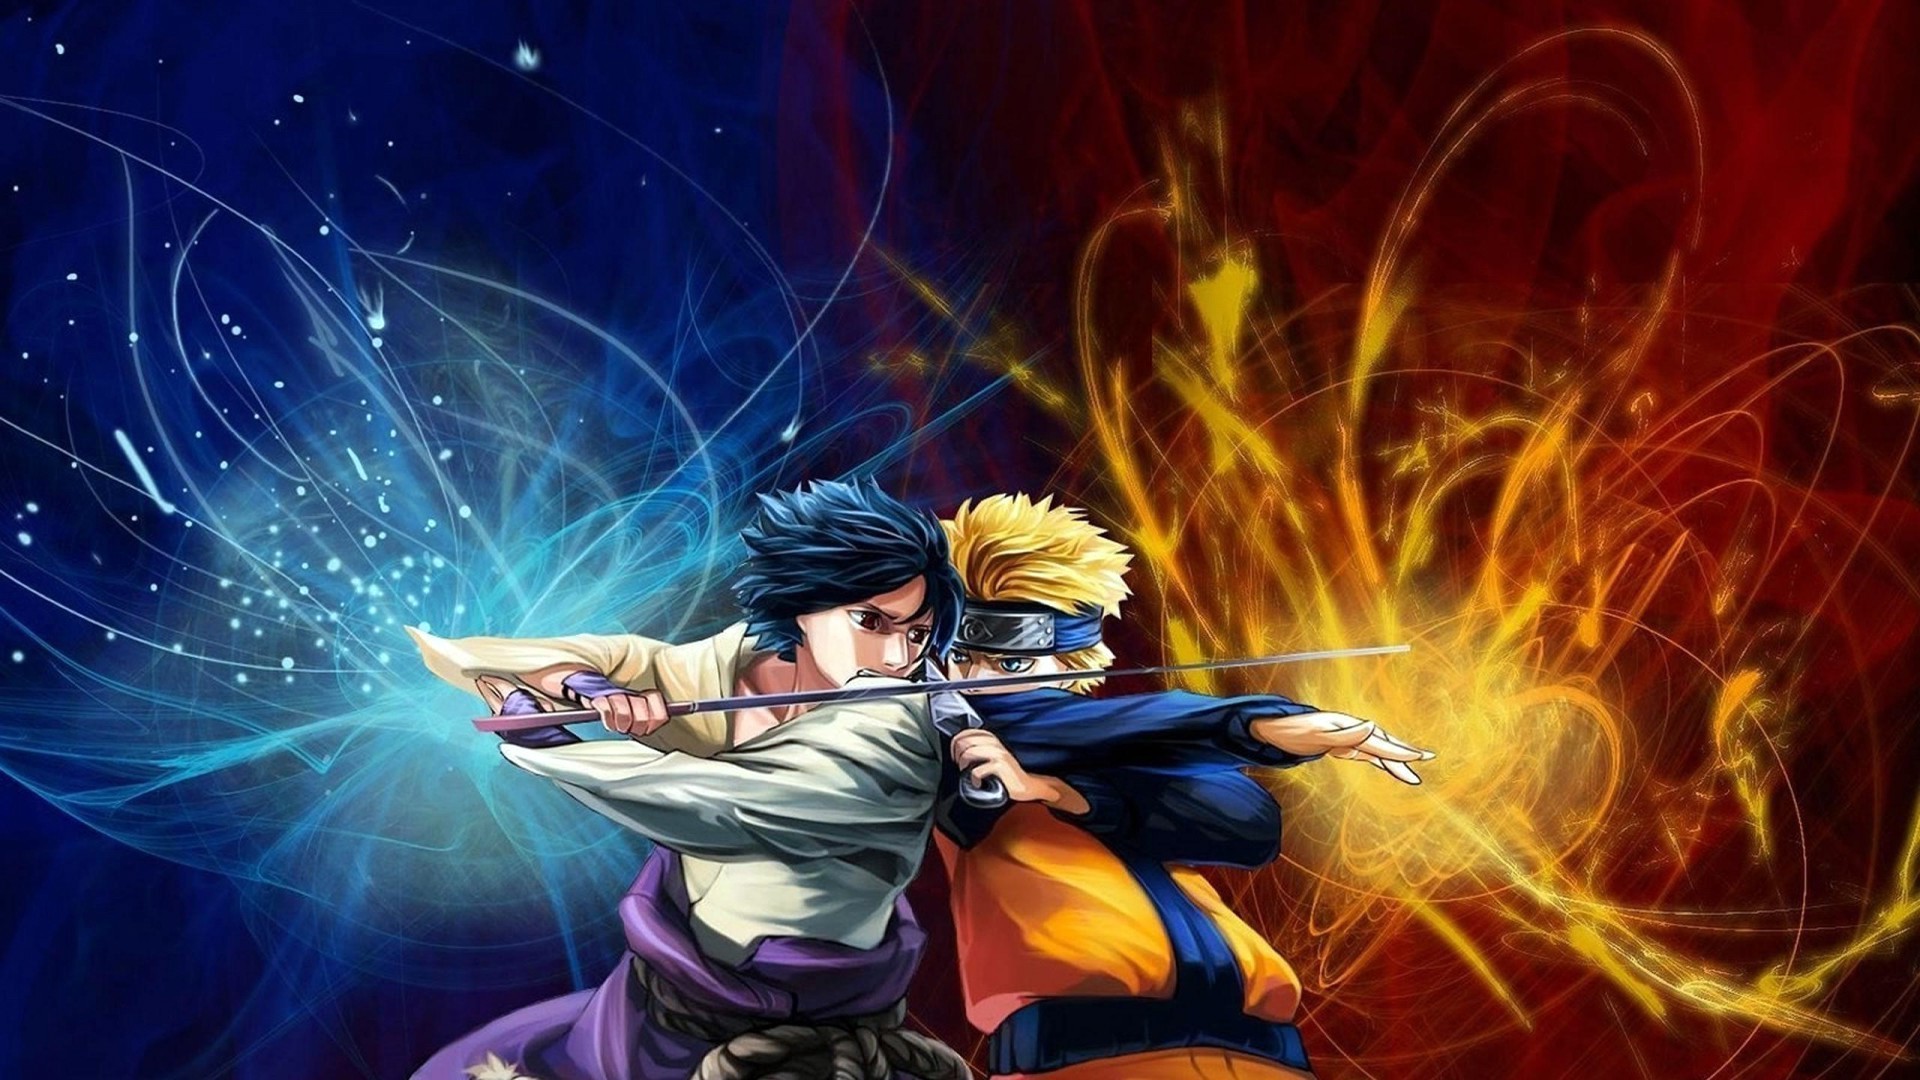 Fighting Uchiha Sasuke Naruto Shippuden Uzumaki Naruto wallpaper 183951 WallpaperUP